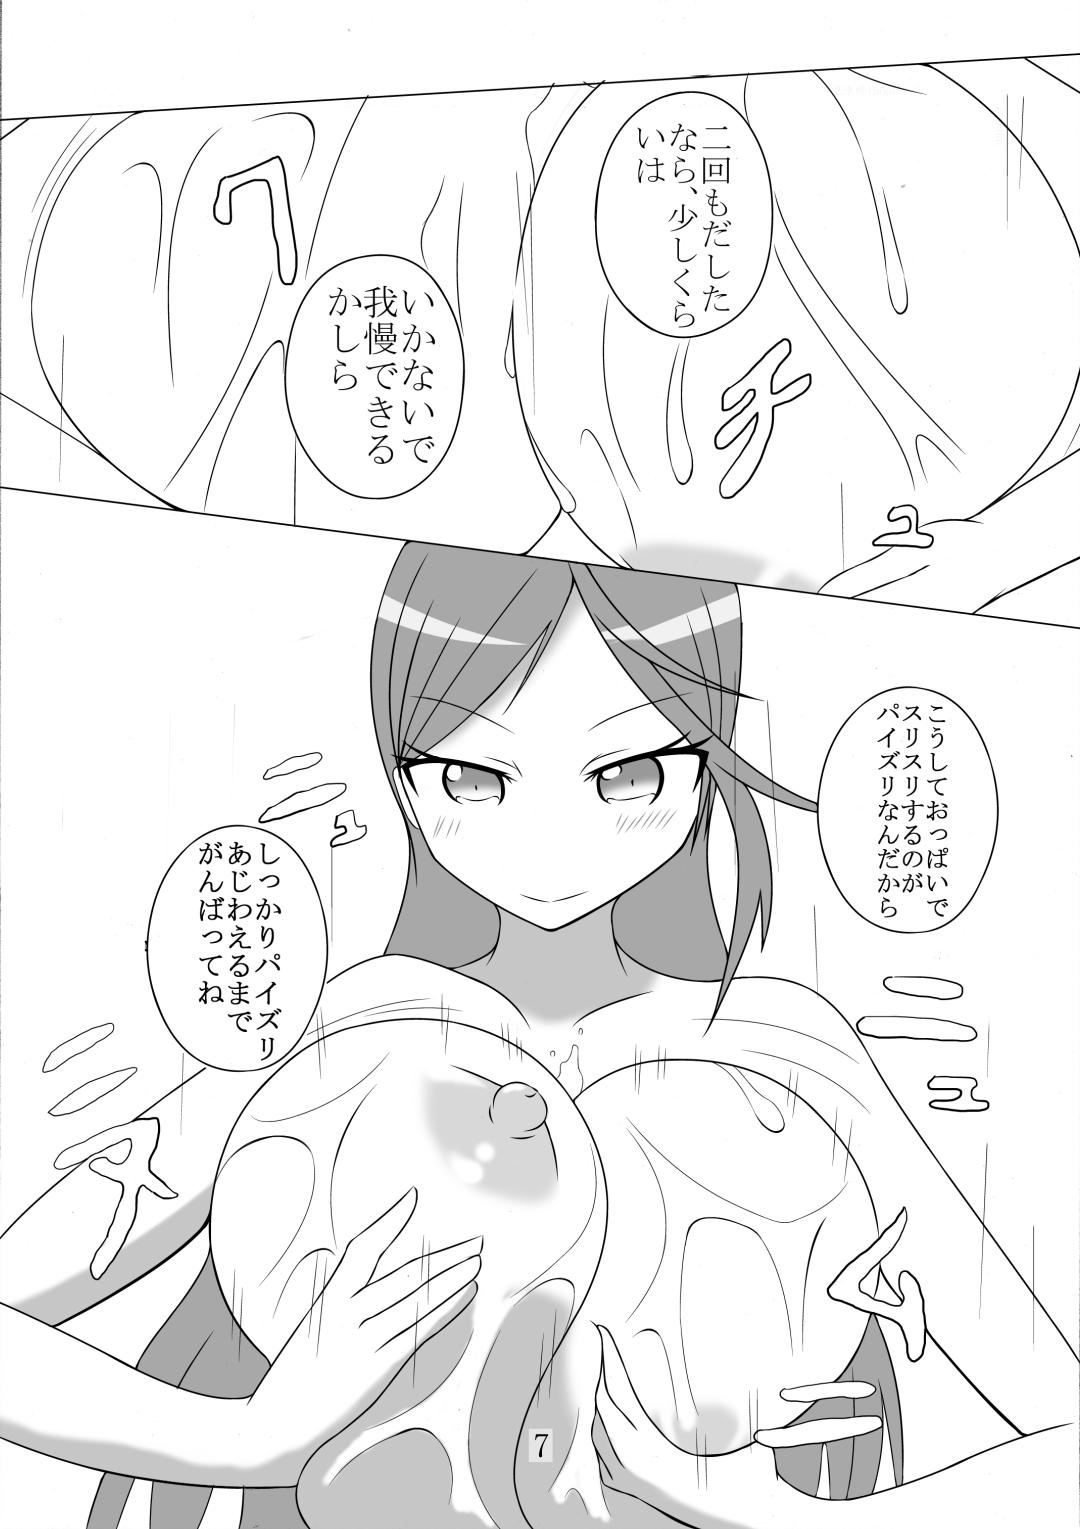 18 Year Old Porn Paizuri Manga Shuu - Dungeon ni deai o motomeru no wa machigatteiru darou ka Shokugeki no soma Triage x Transvestite - Page 7